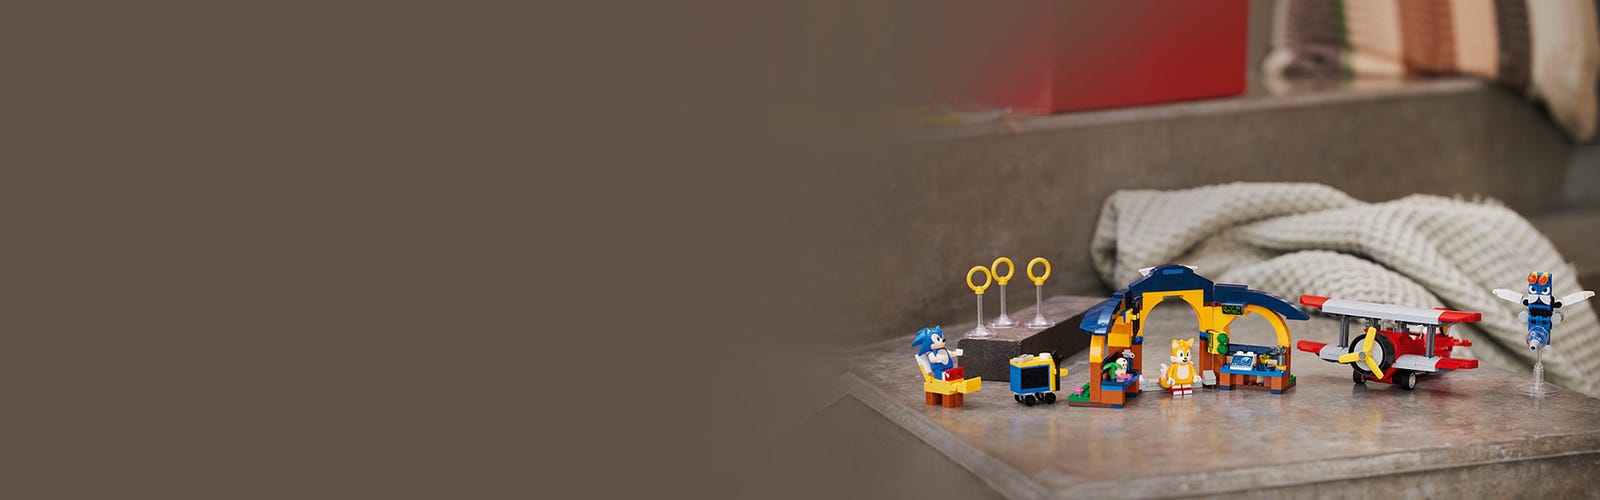 Lego-sonic o ouriço™Building Block Toys for Kids, Tails' Workshop, Tornado  Plane, Aniversário, Natal, Presente de Ano Novo, 76991 - AliExpress